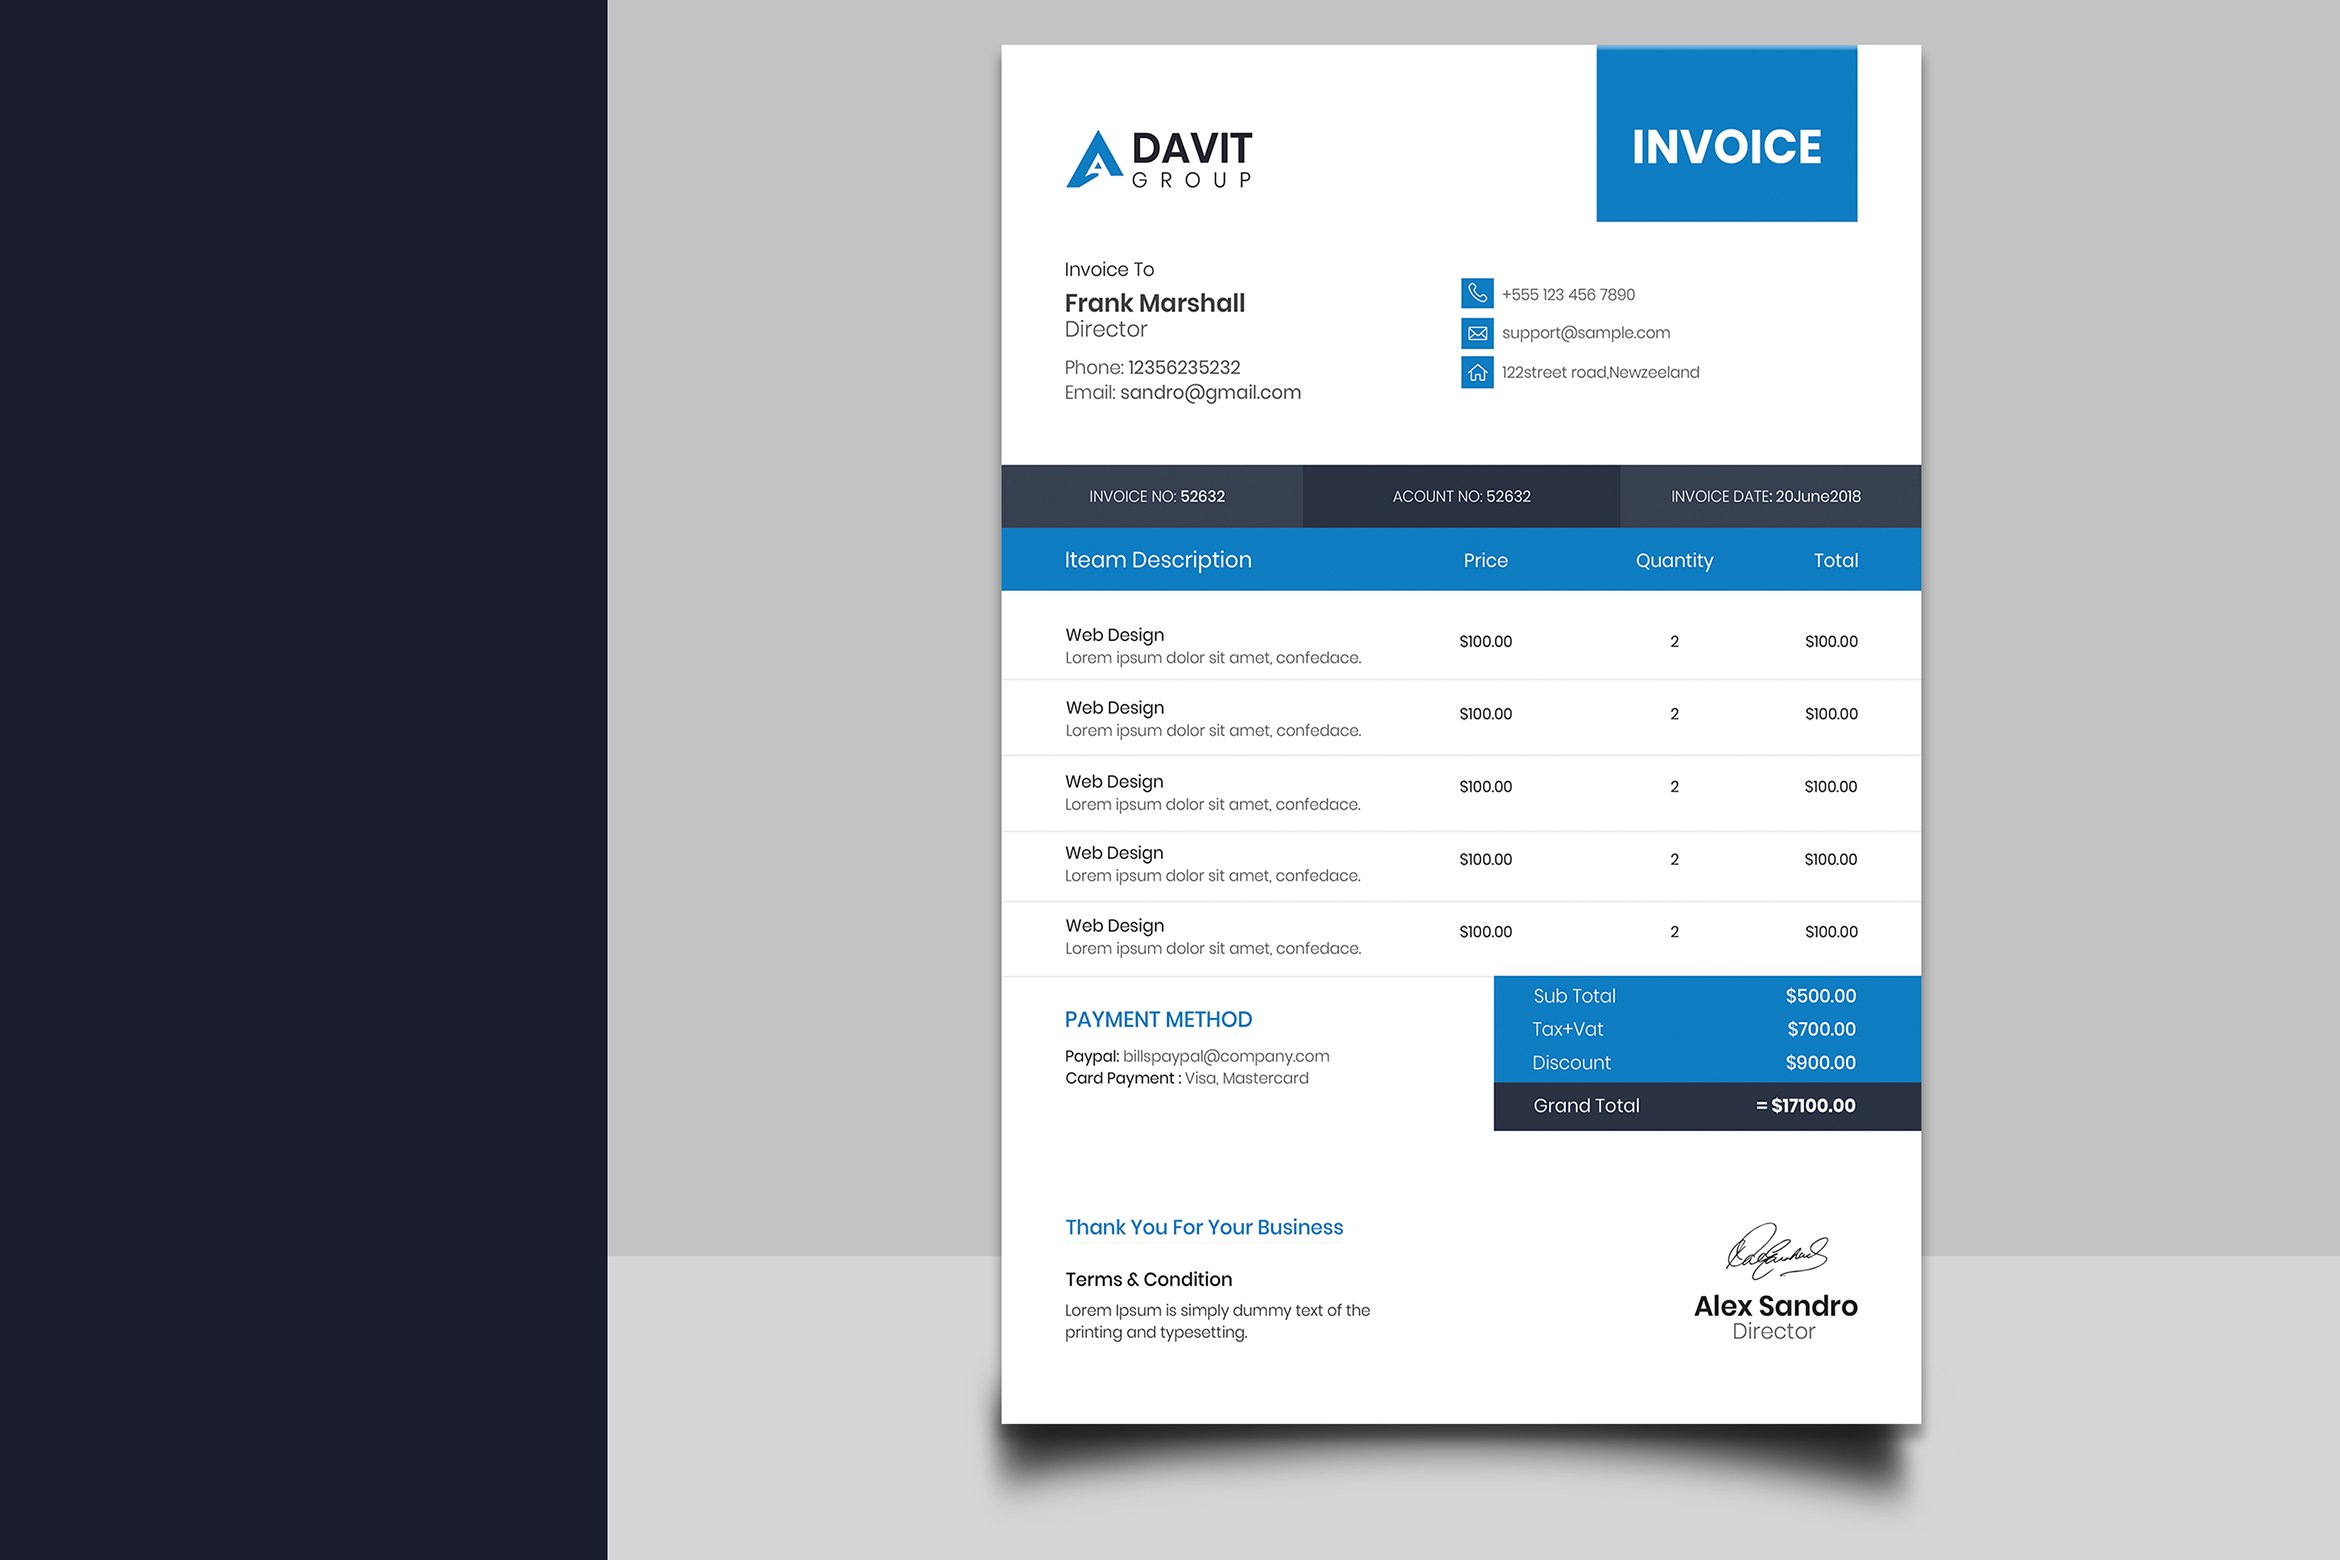 Invoice Design preview image.